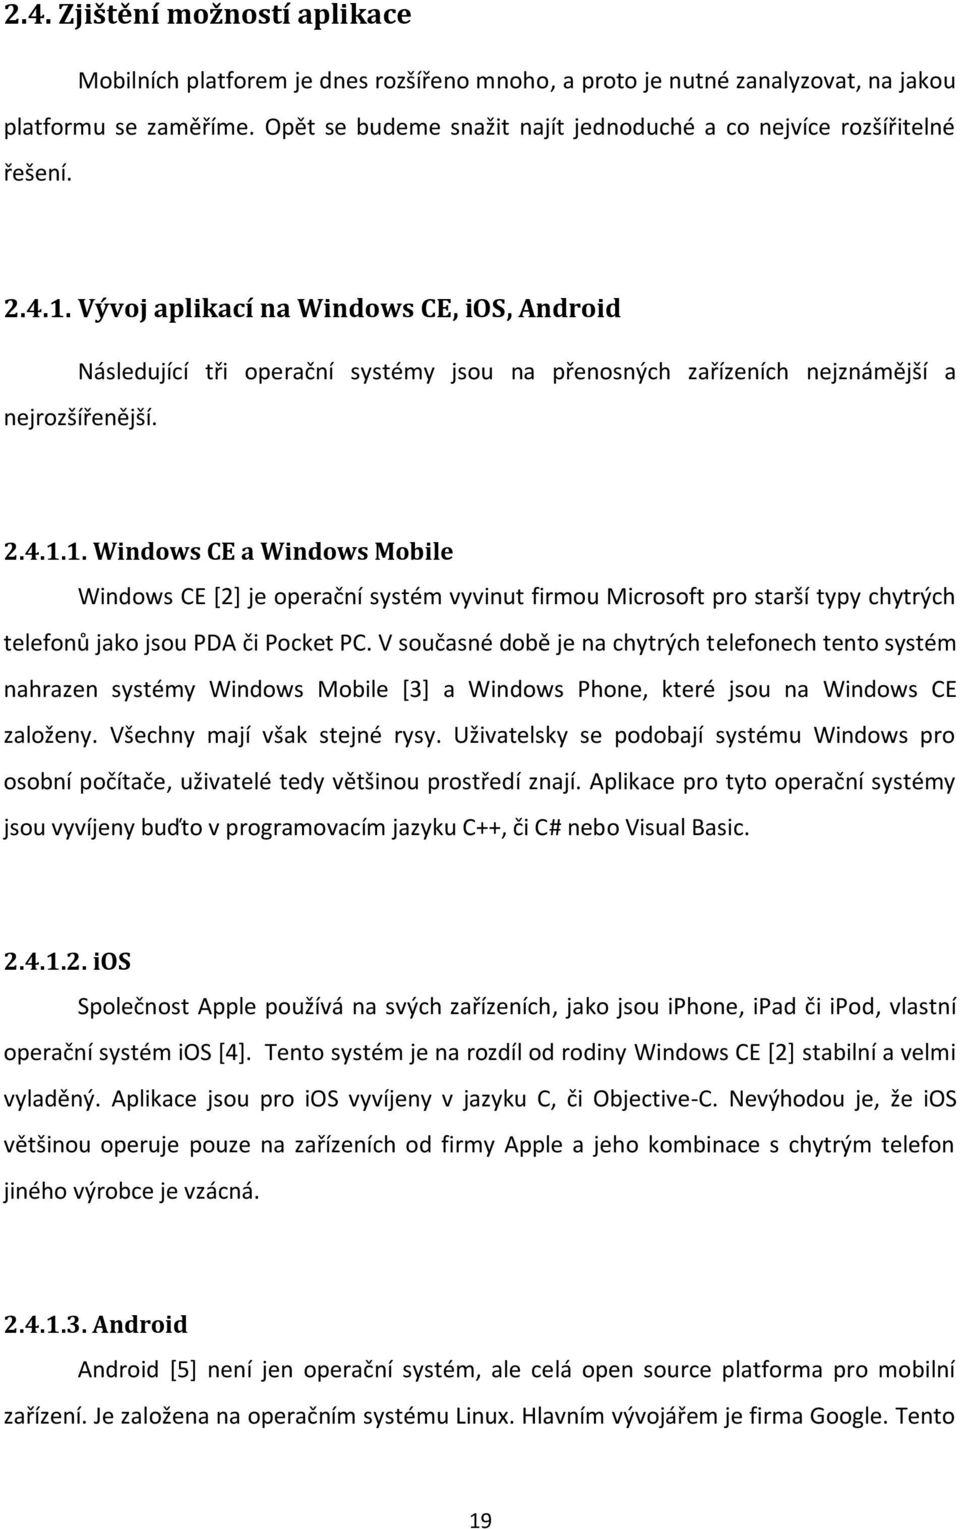 Vývoj aplikací na Windows CE, ios, Android Následující tři operační systémy jsou na přenosných zařízeních nejznámější a nejrozšířenější. 2.4.1.